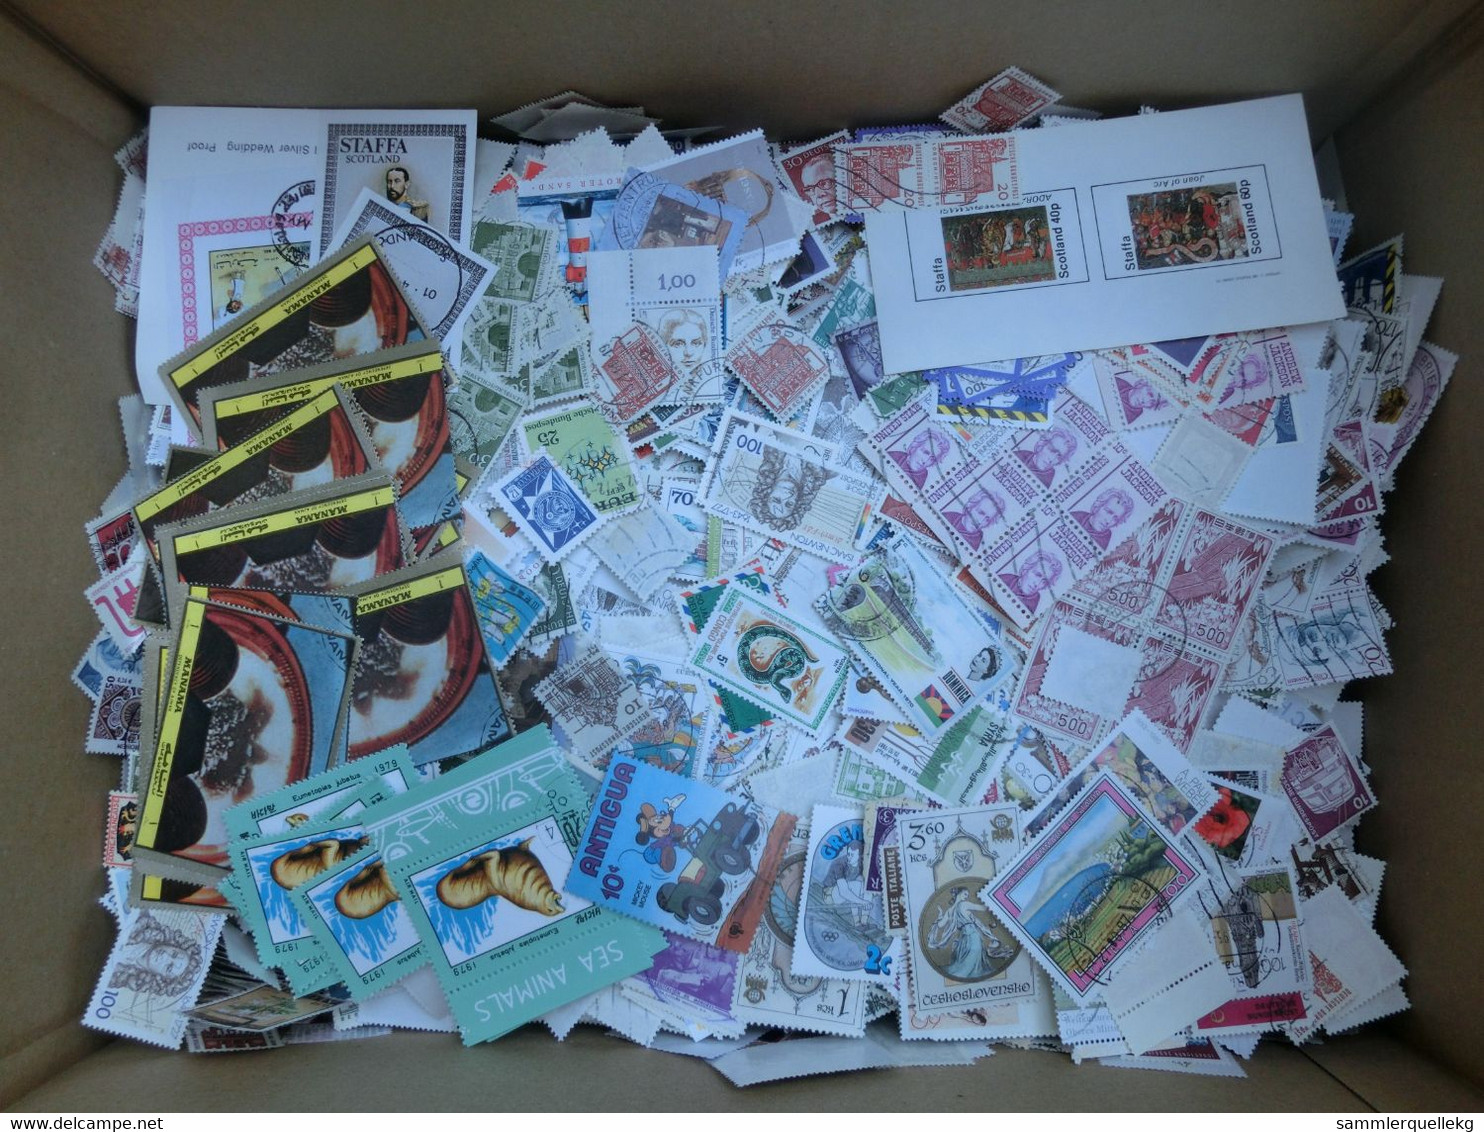 3 Kg Briefmarken alle Welt, Sondermarken, Freimarken ohne Papier